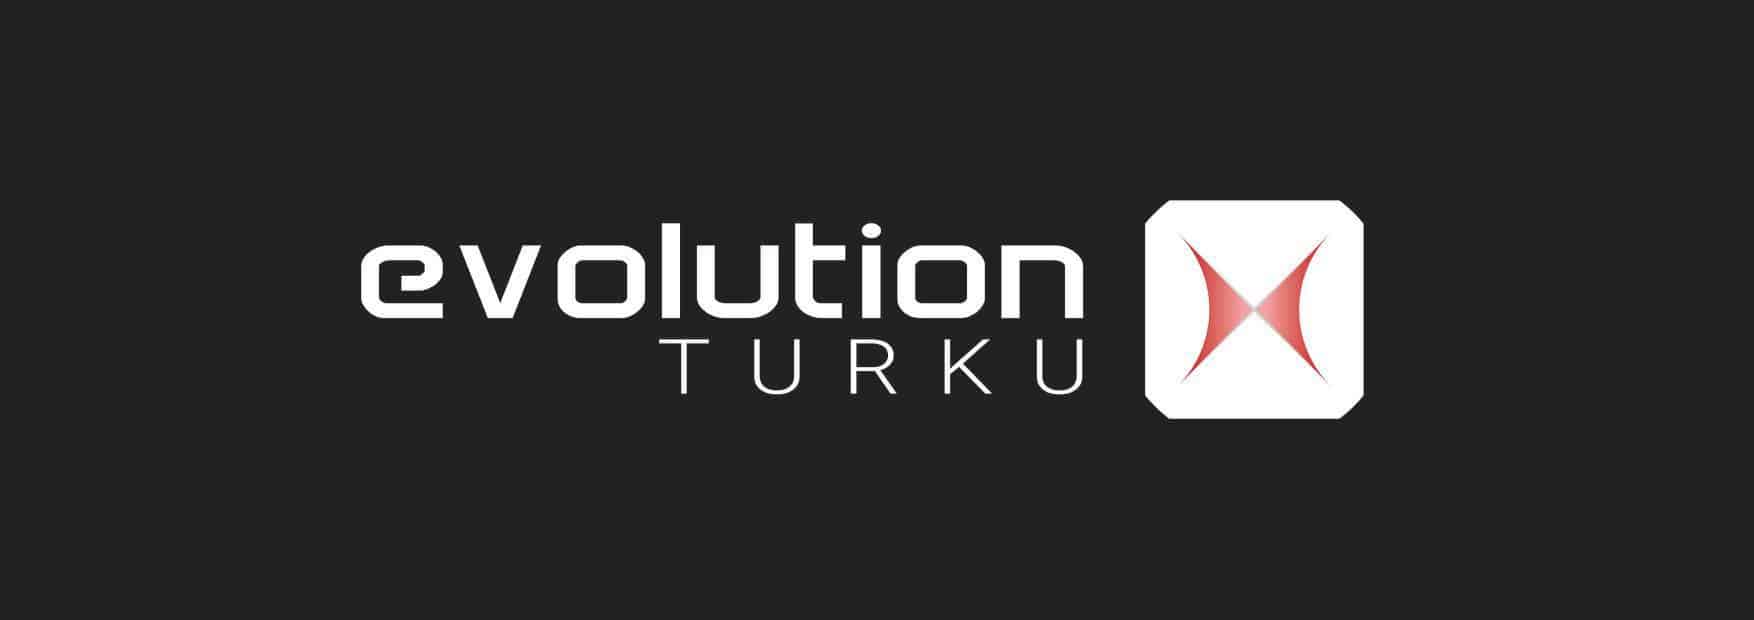 evolution_turku